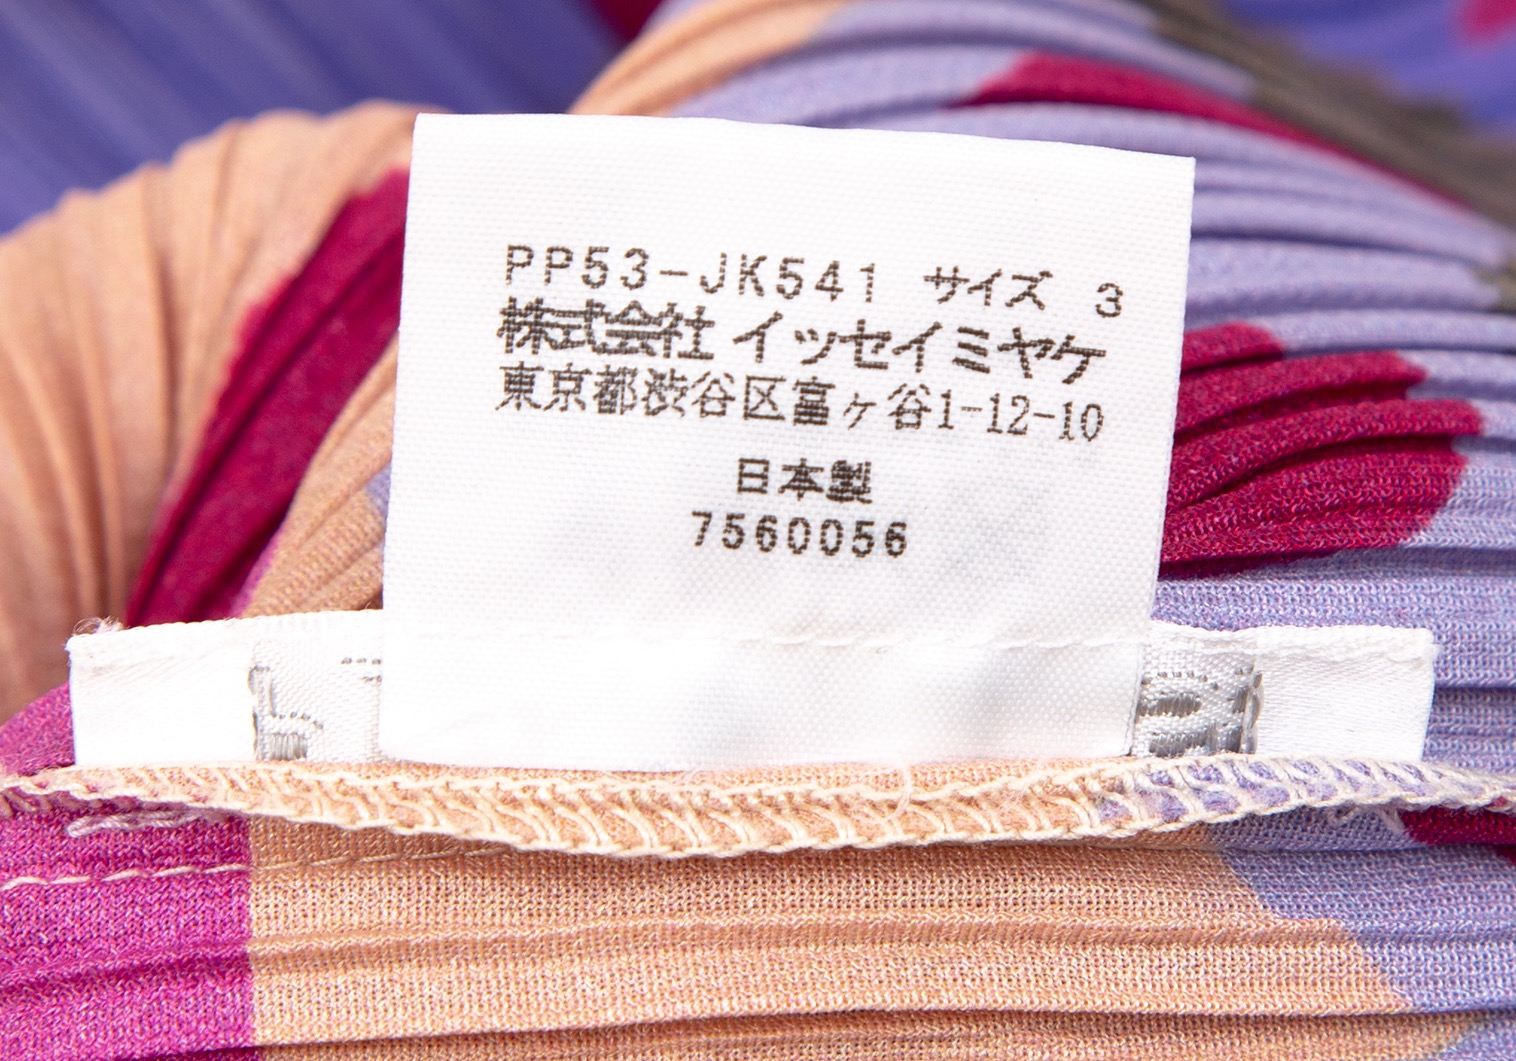 イッセミヤケ紫TシャツPP31-KK771-80